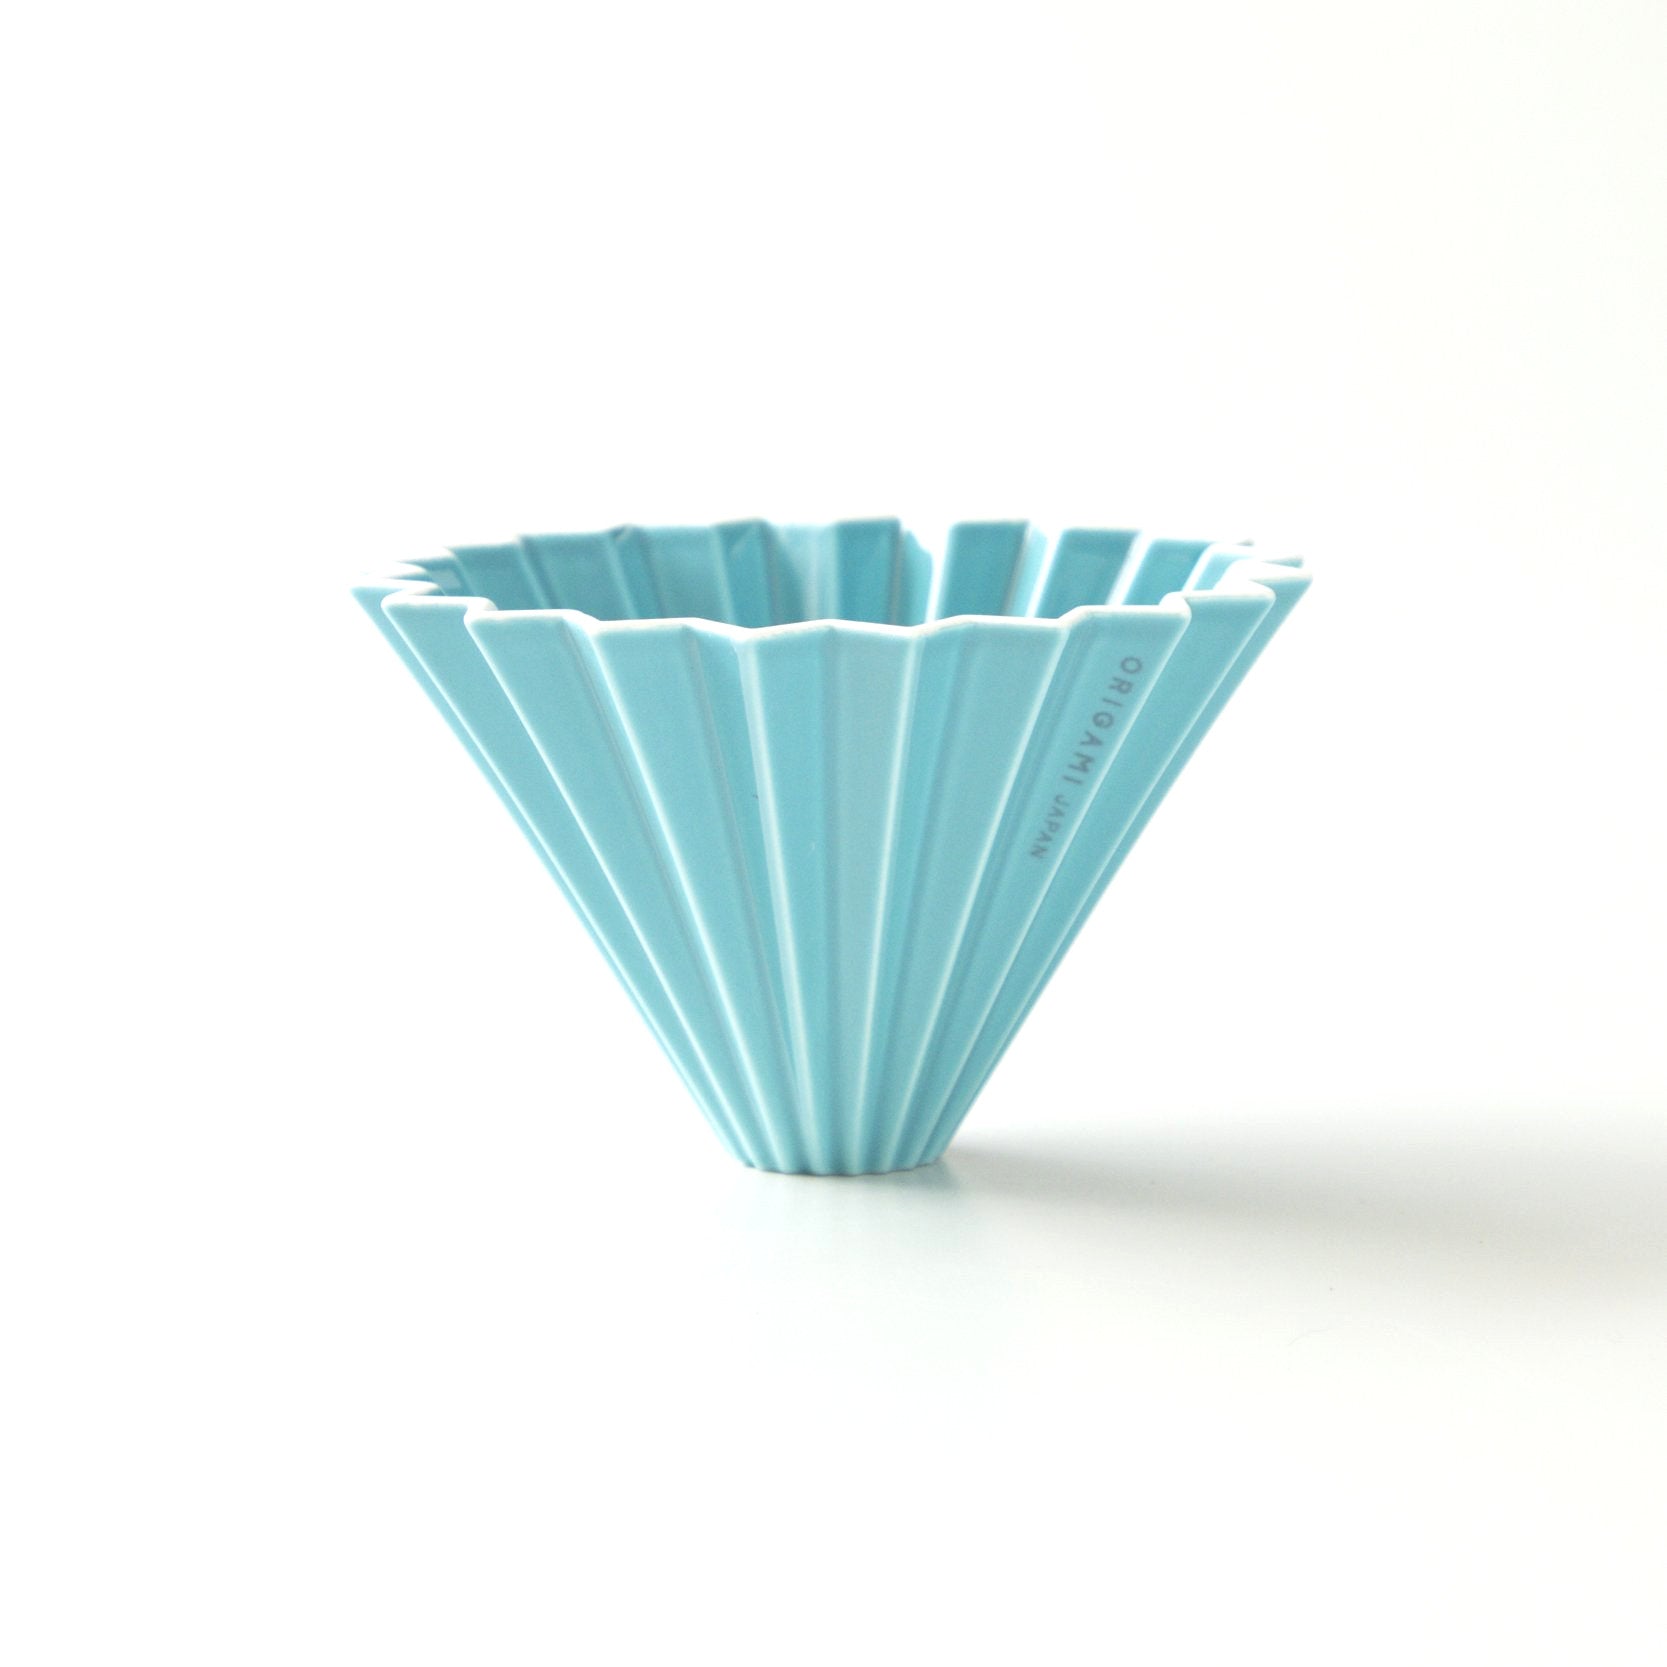 Origami medium ceramic dripper in turquoise